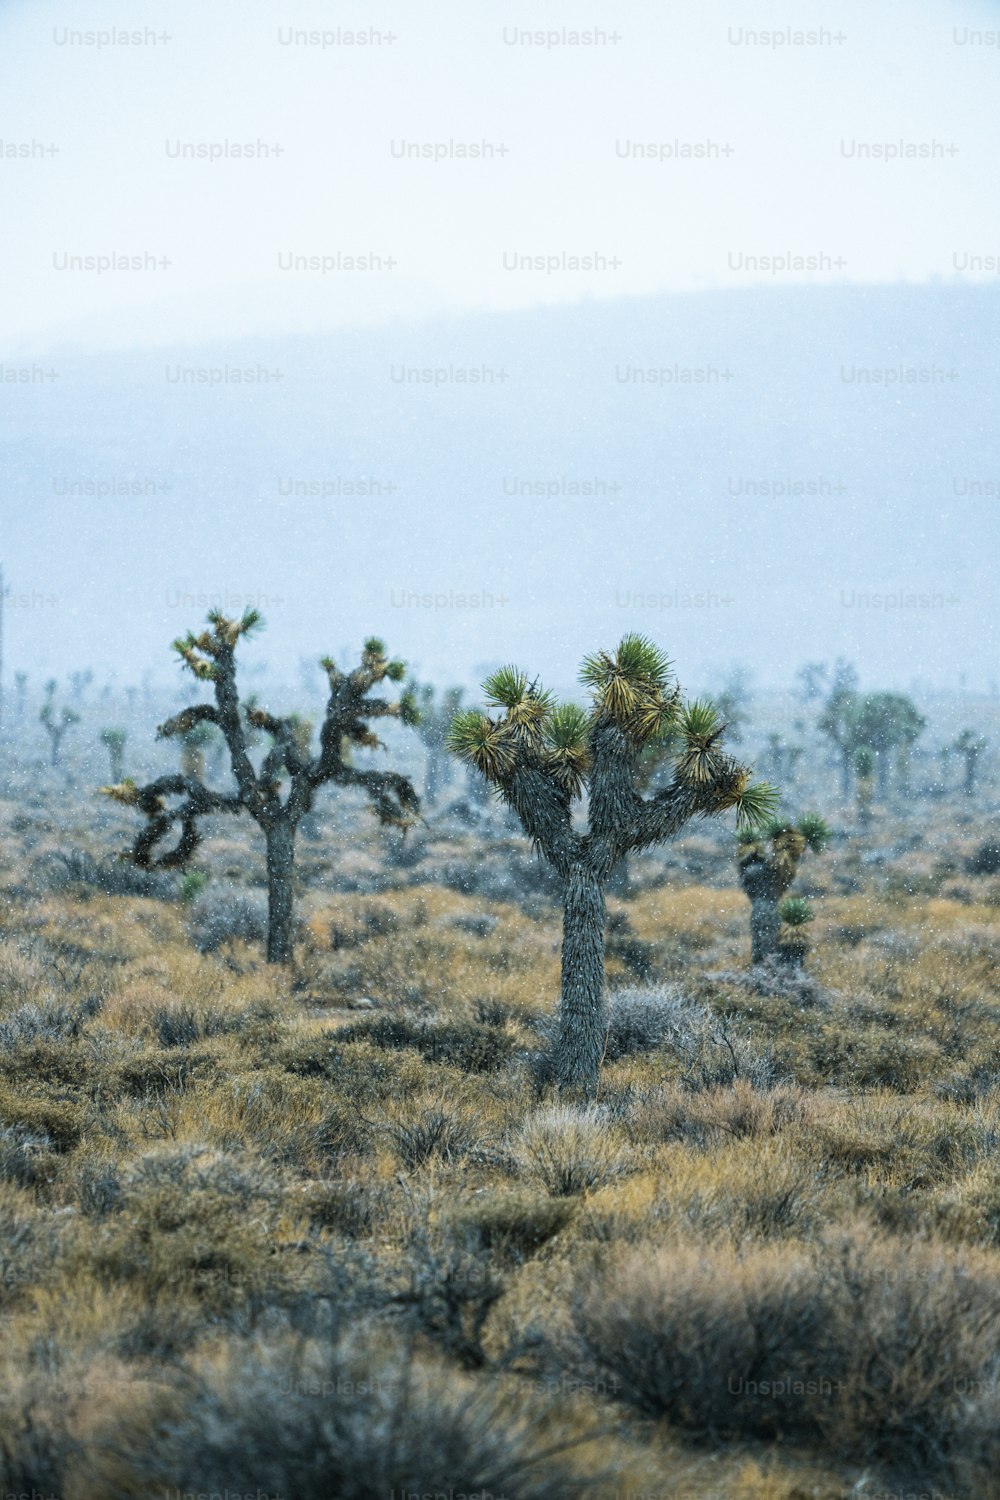 Eine Gruppe von Joshua-Bäumen in der Wüste